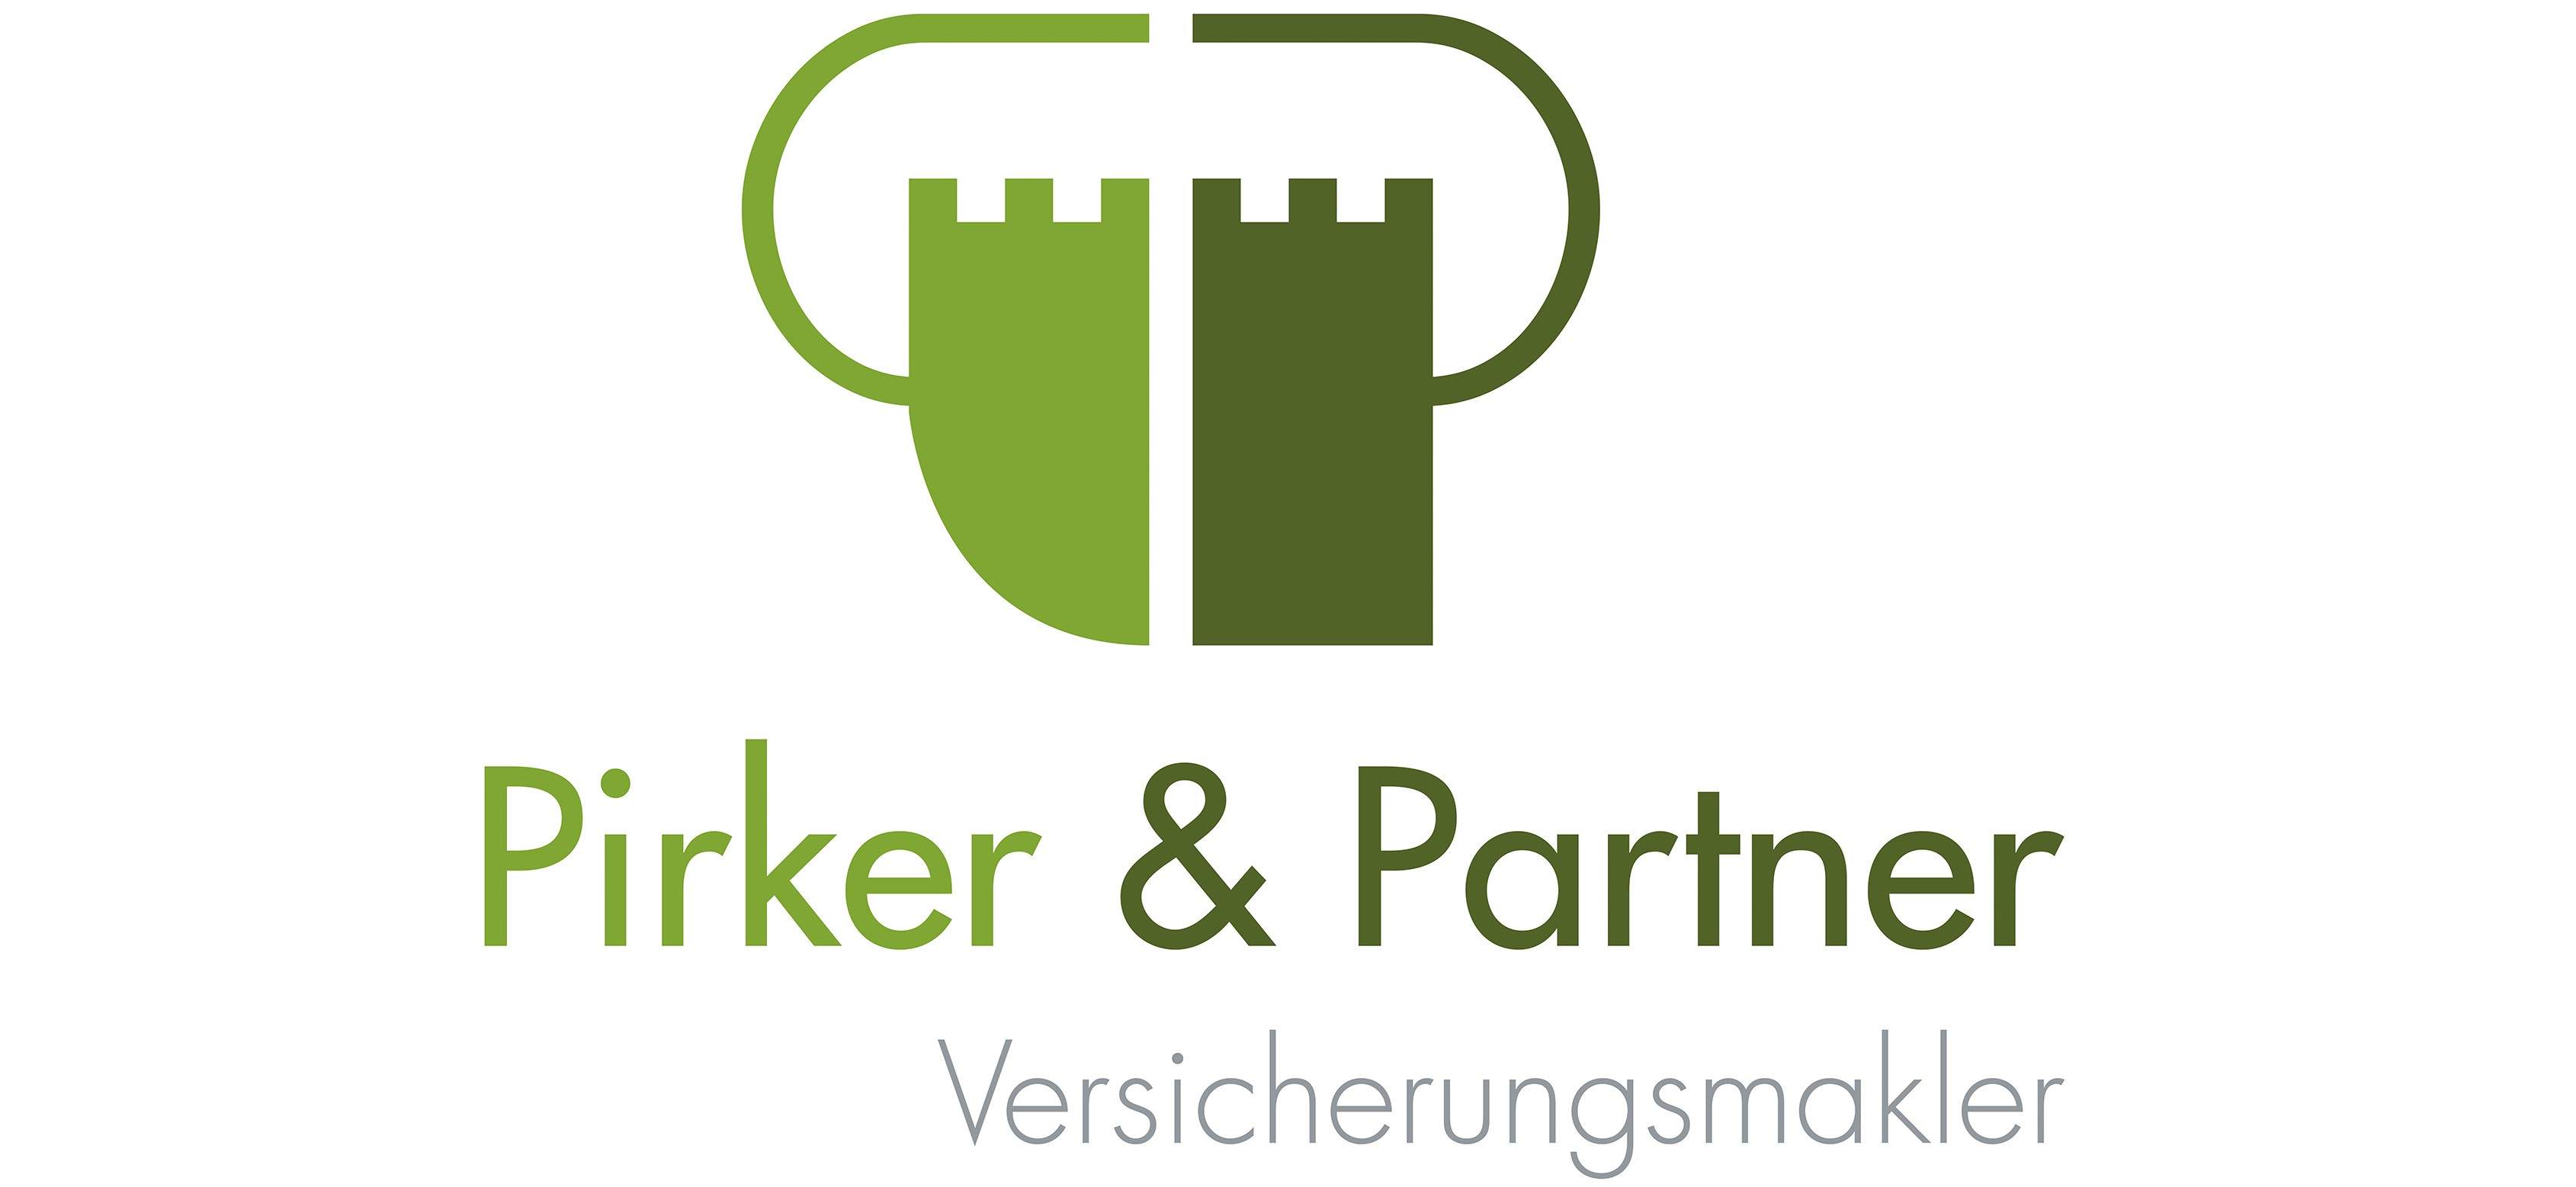 Telefonansagen für Pirker & Partner, Eggler, Scharfegger & Partner und Optimax